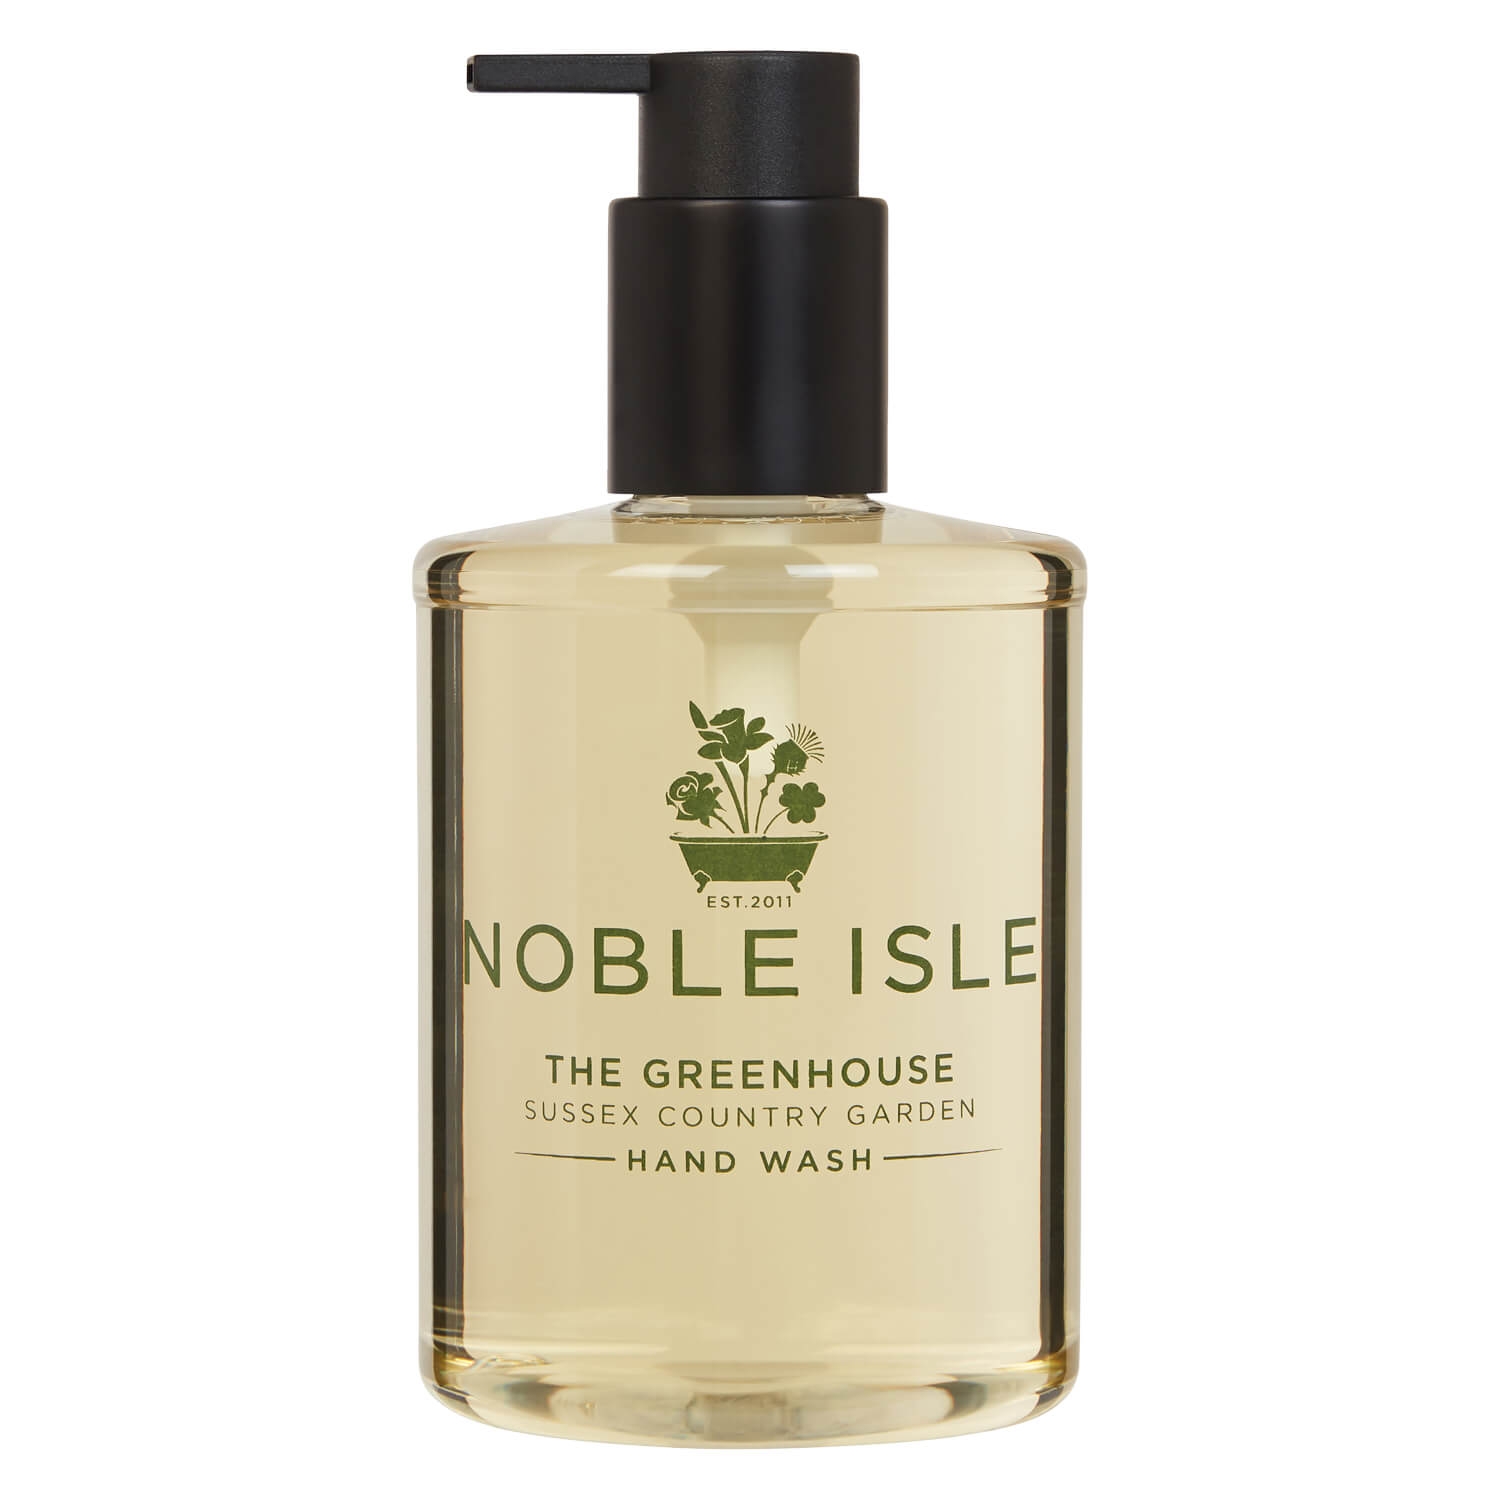 Produktbild von Noble Isle - The Greenhouse Hand Wash